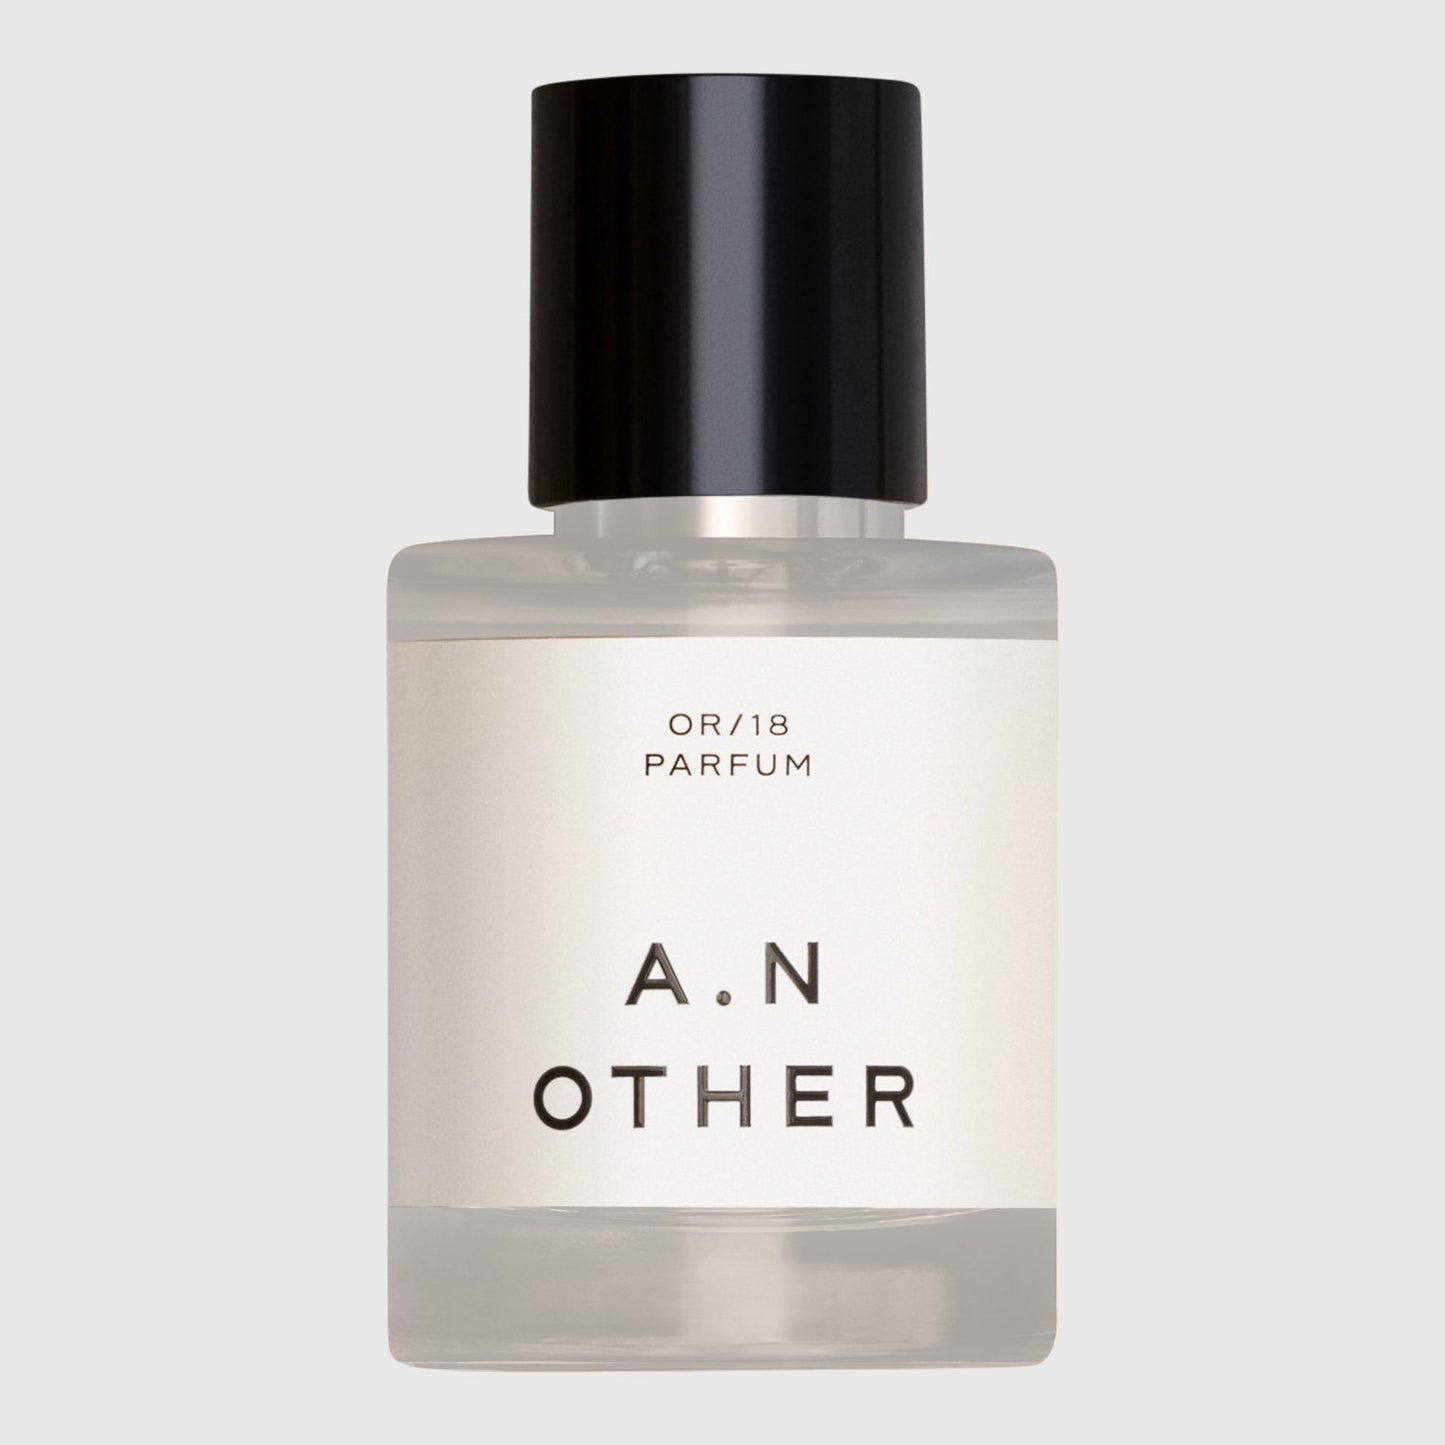 A. N. Other OR/18 Eau de Parfum Eau de Parfum A. N. Other 50 ml 